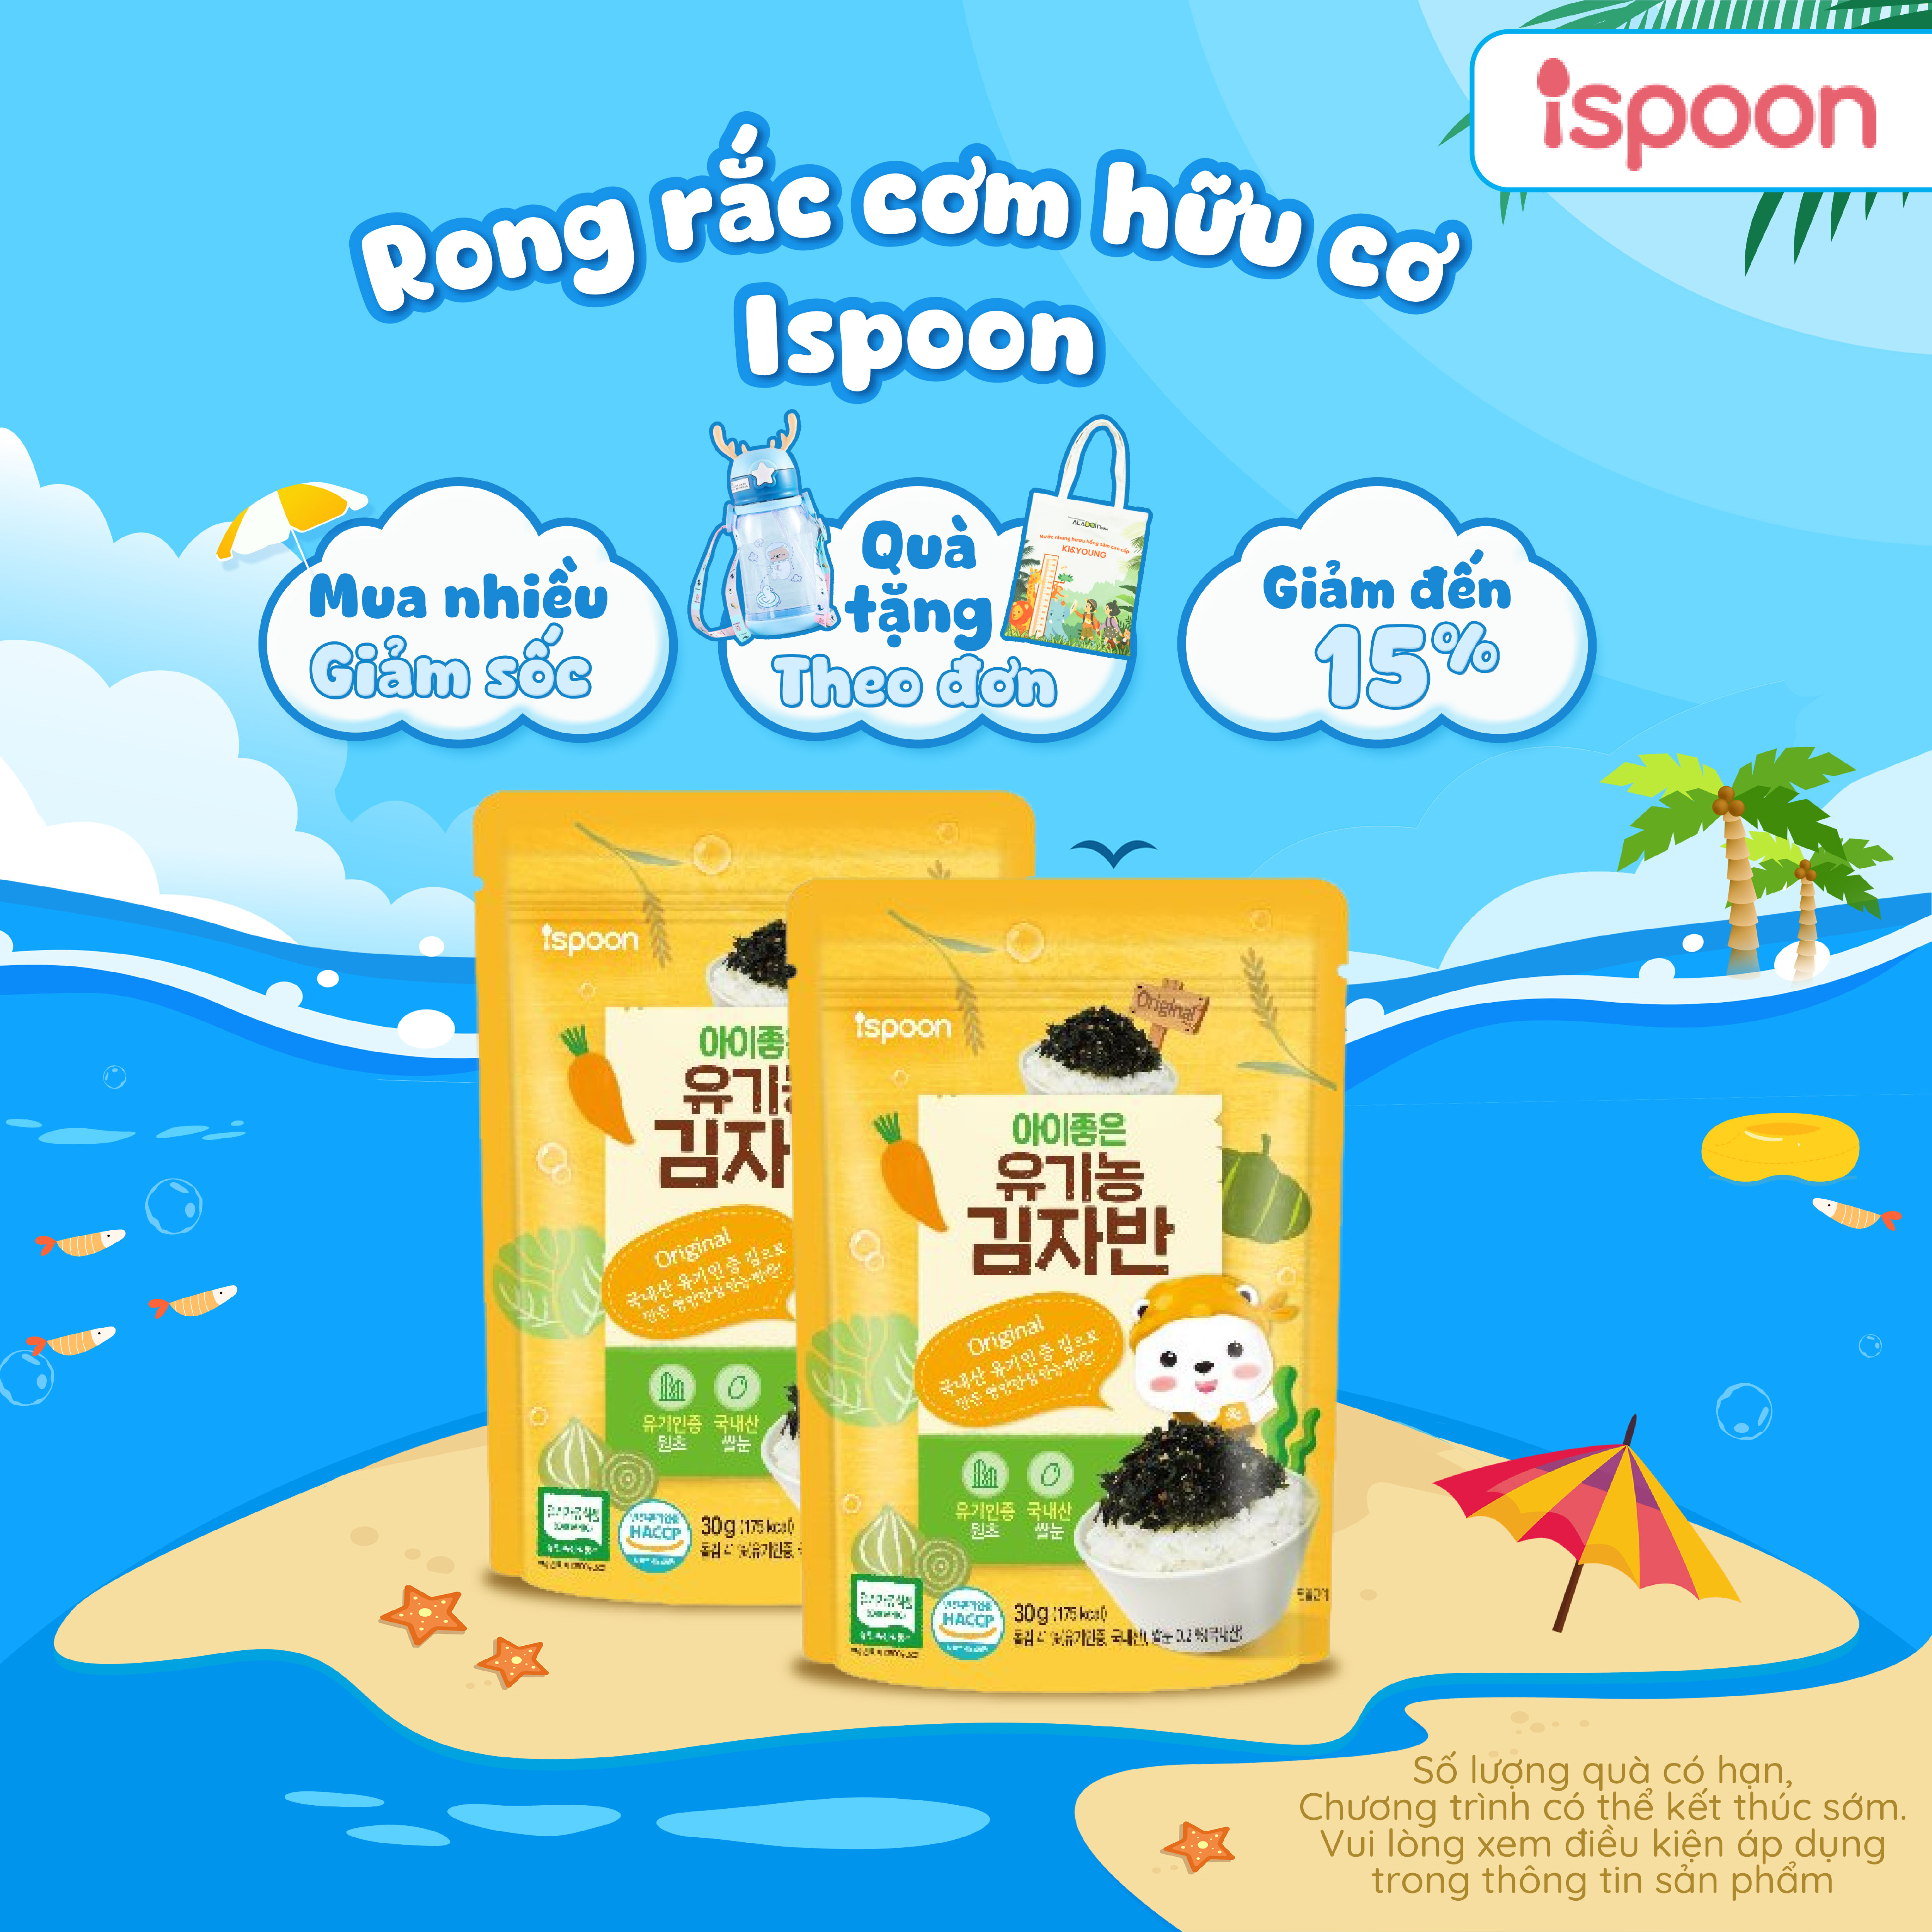 Rong biển vụn rắc cơm hữu cơ Ipsoon 30g nhập khẩu Hàn Quốc